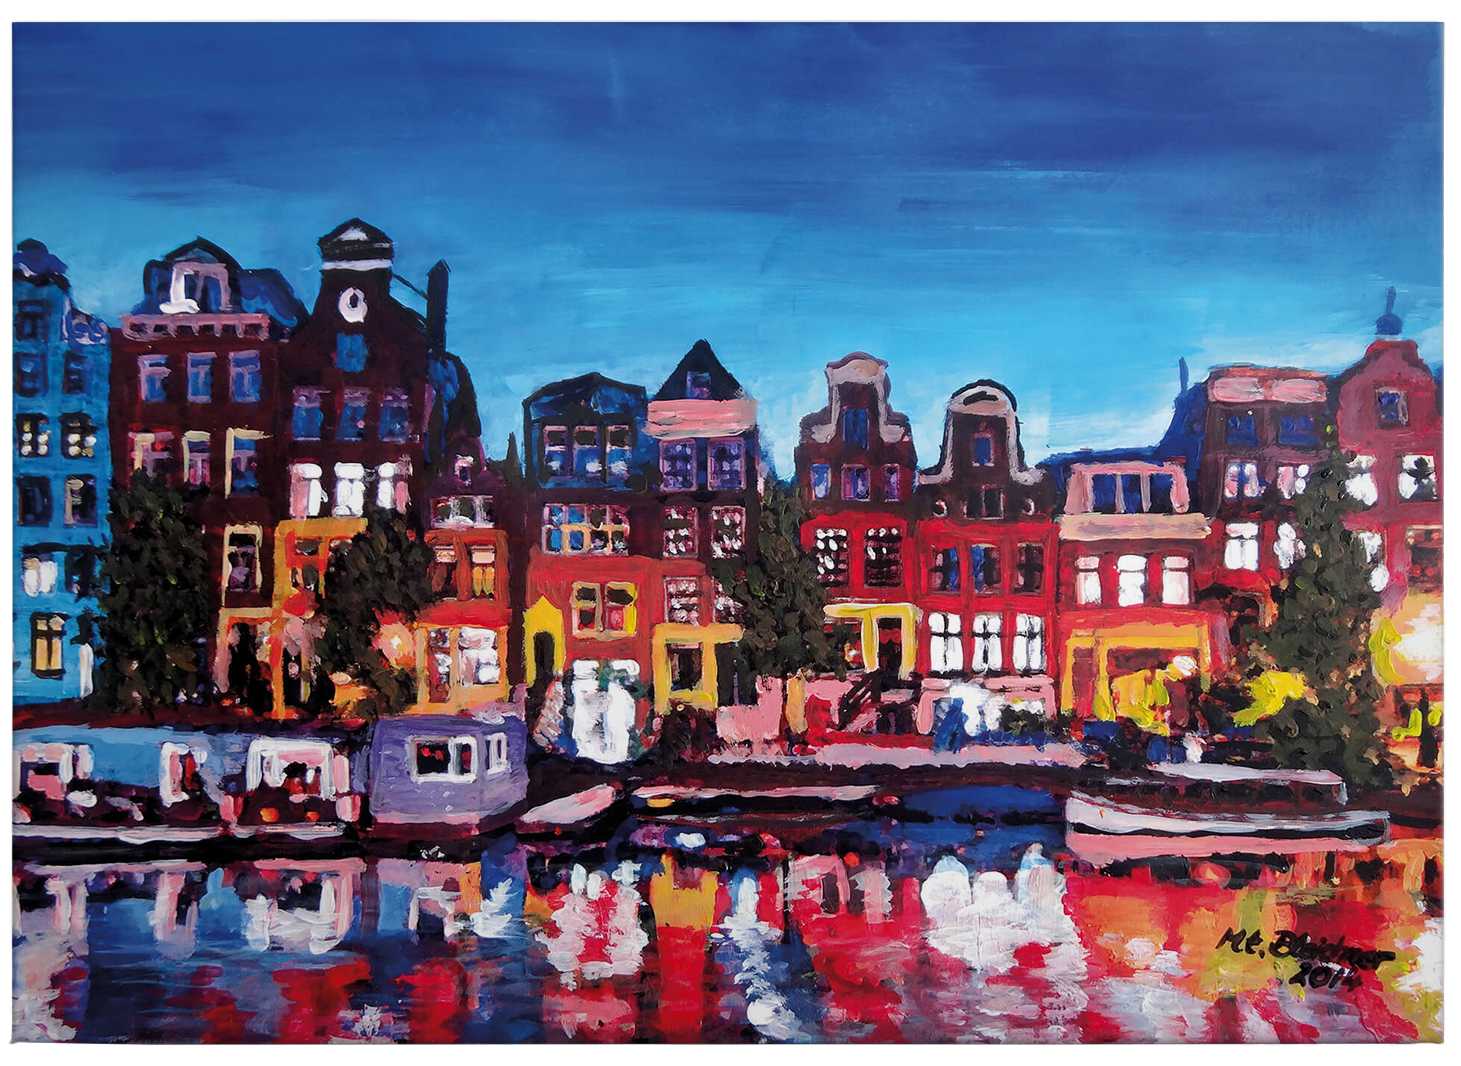             Leinwandbild Gemälde "Amsterdam" von Bleichner – 0,70 m x 0,50 m
        